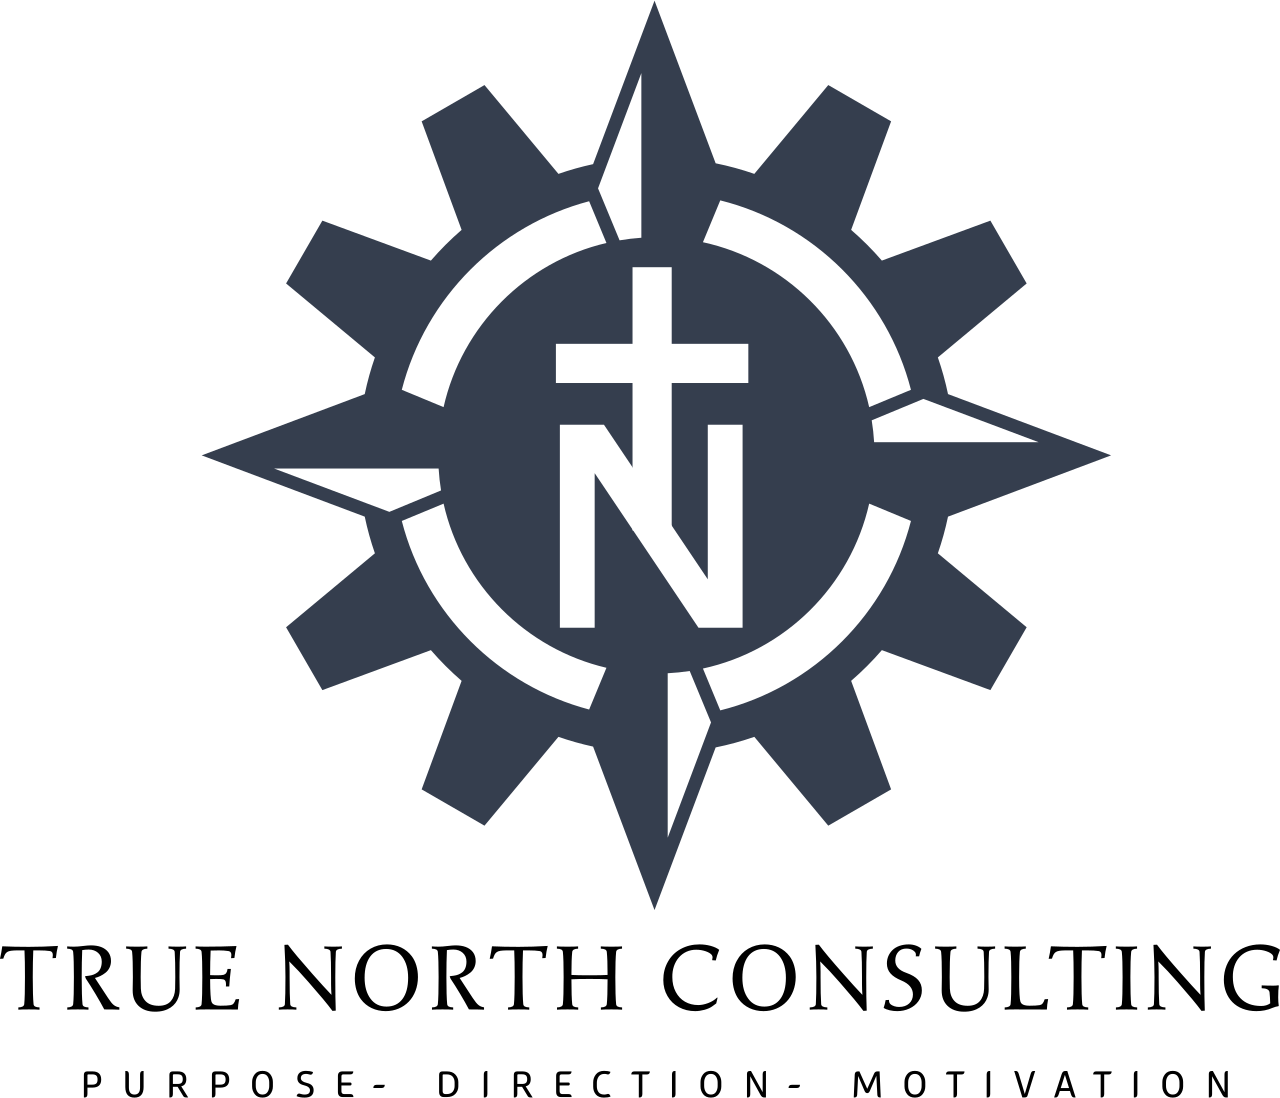 True North (TN) Consulting Pro's logo